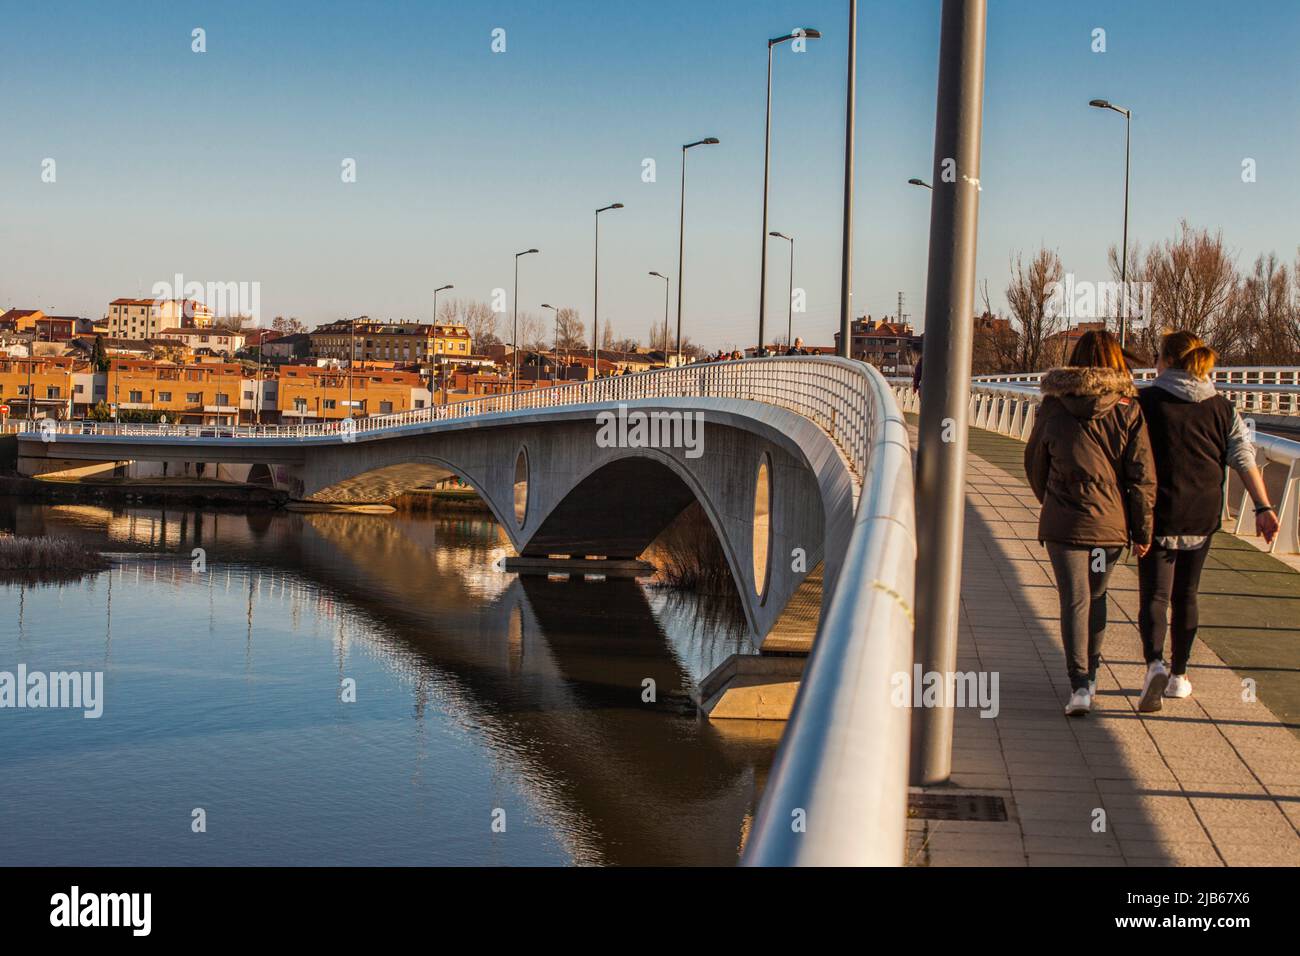 Puente de los poetas, puente nuevo, río Duero, ciudad de Zamora, Providencia de Zamora, Castilla y León, España, Europa. Foto de stock